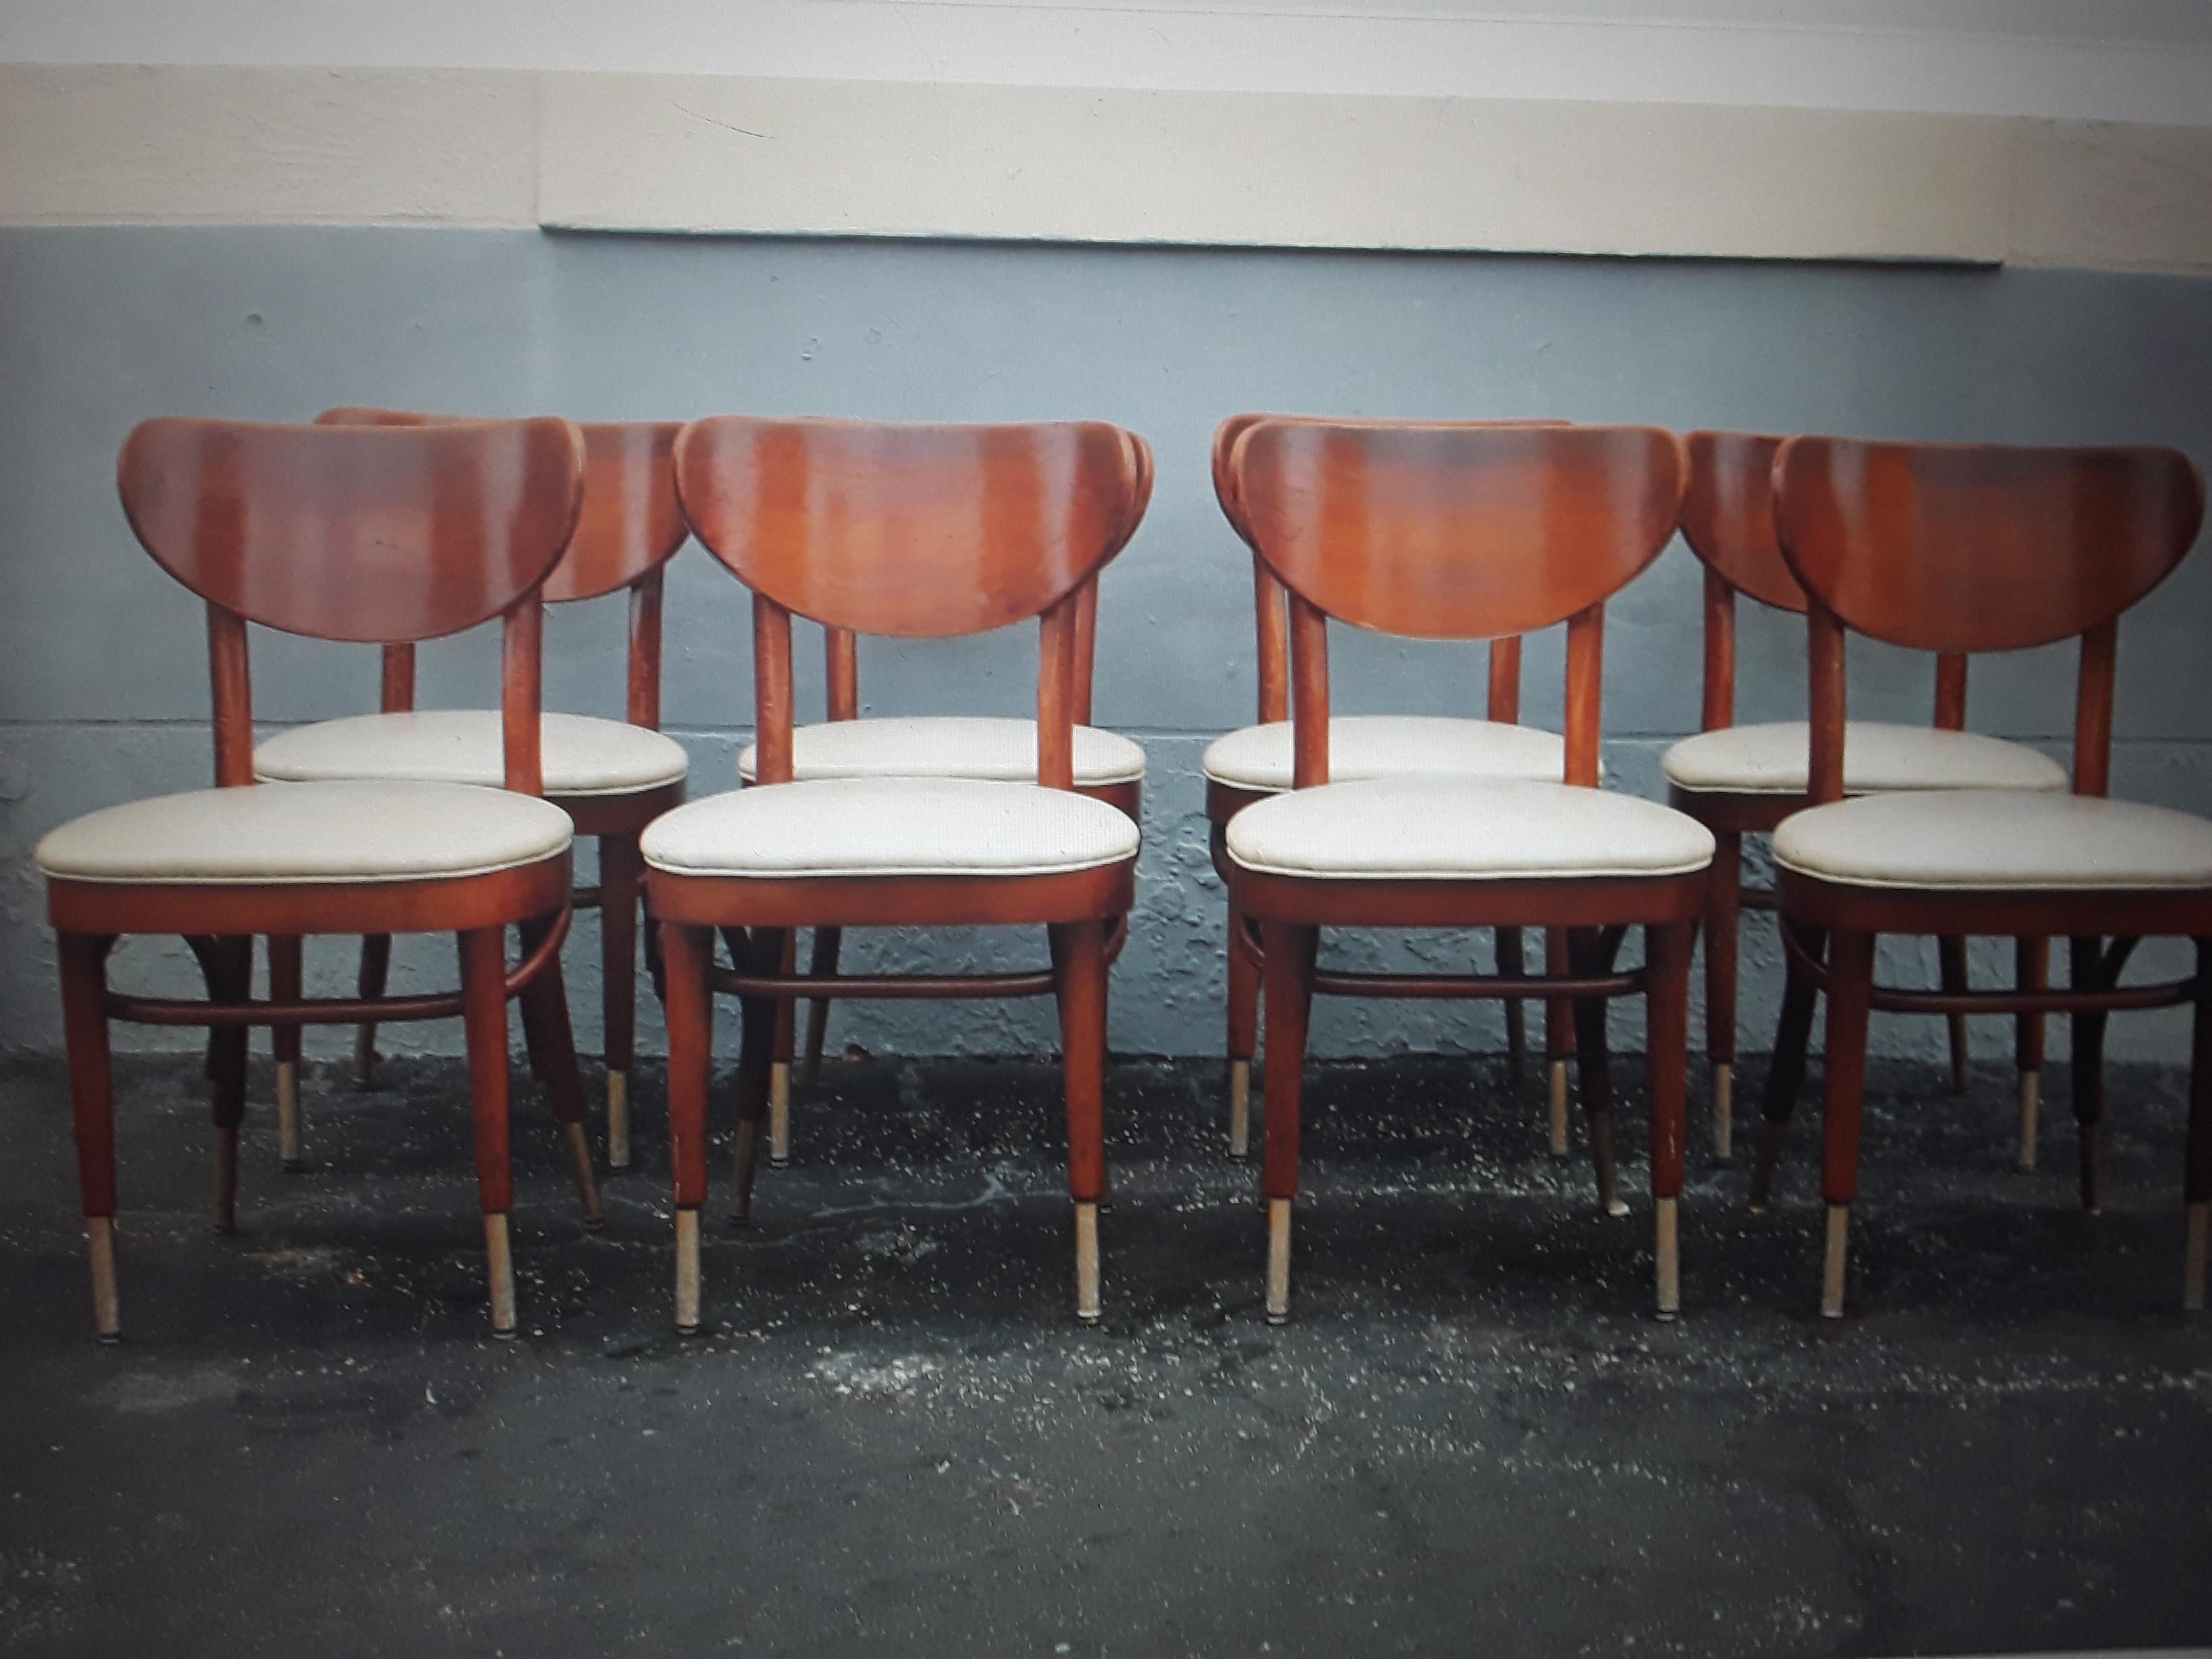 Ensemble de 6 chaises de salle à manger de style futuriste et moderne du milieu du siècle. Bois courbé et capuchons de sabot sur les pieds. Très belle série !